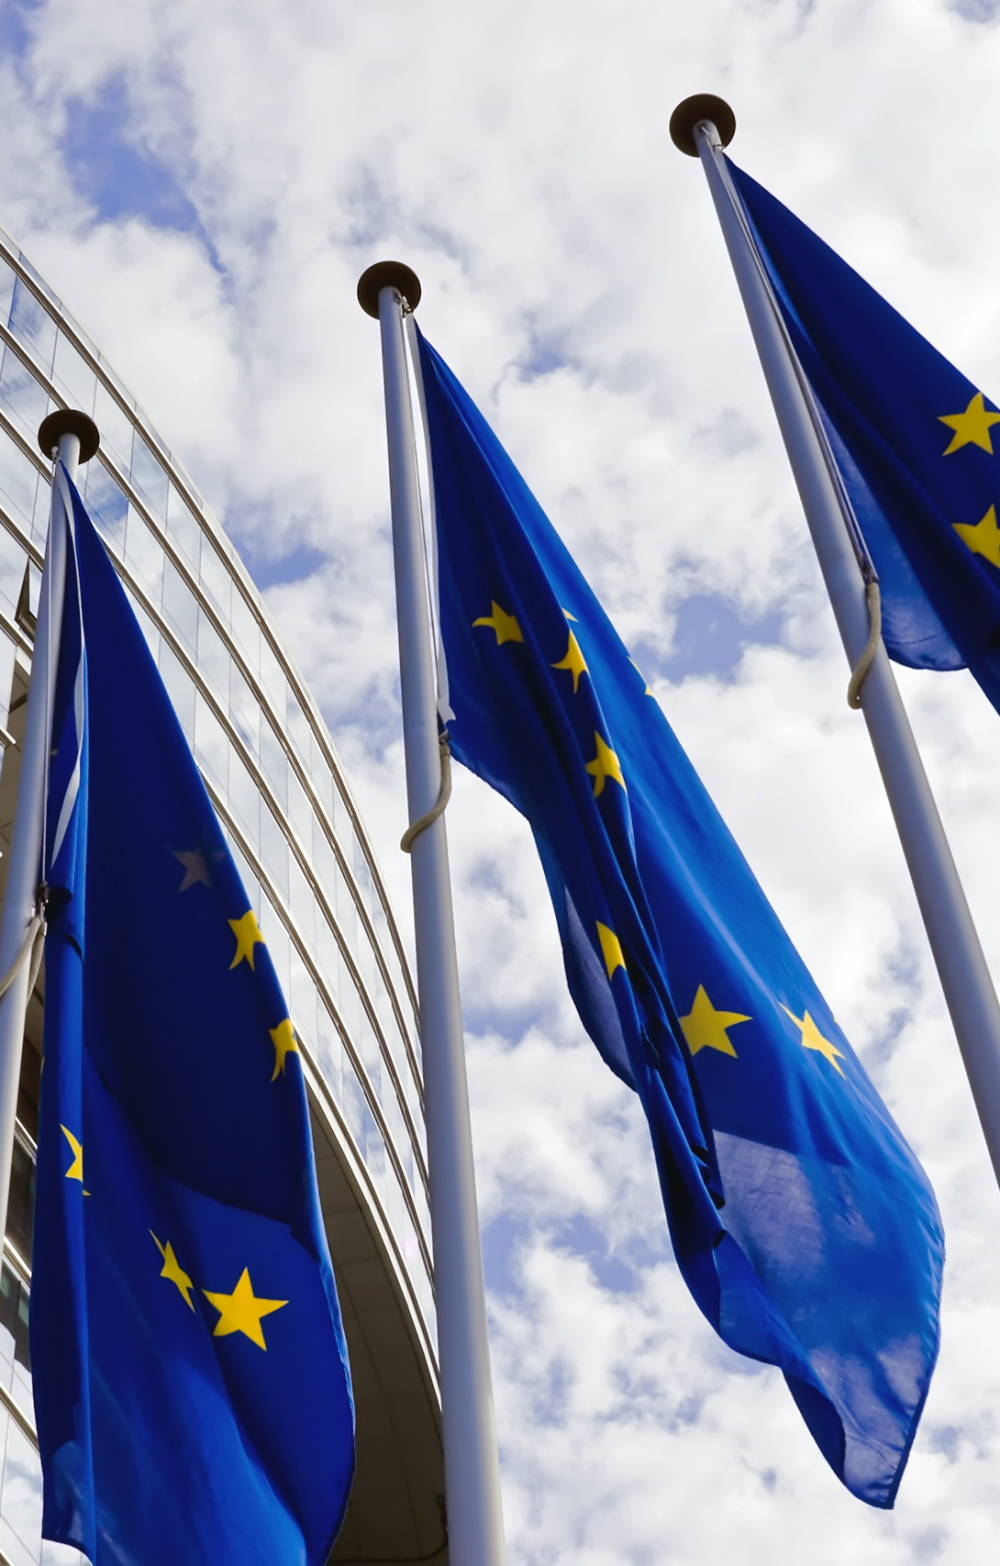 EU flags against a blue sky background